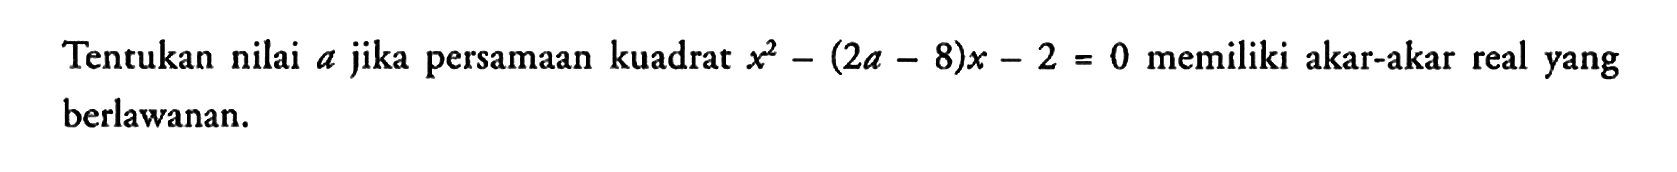 Tentukan nilai a jika persamaan kuadrat x^2 - (2a - 8)x - 2 = 0 memiliki akar-akar real yang berlawanan.